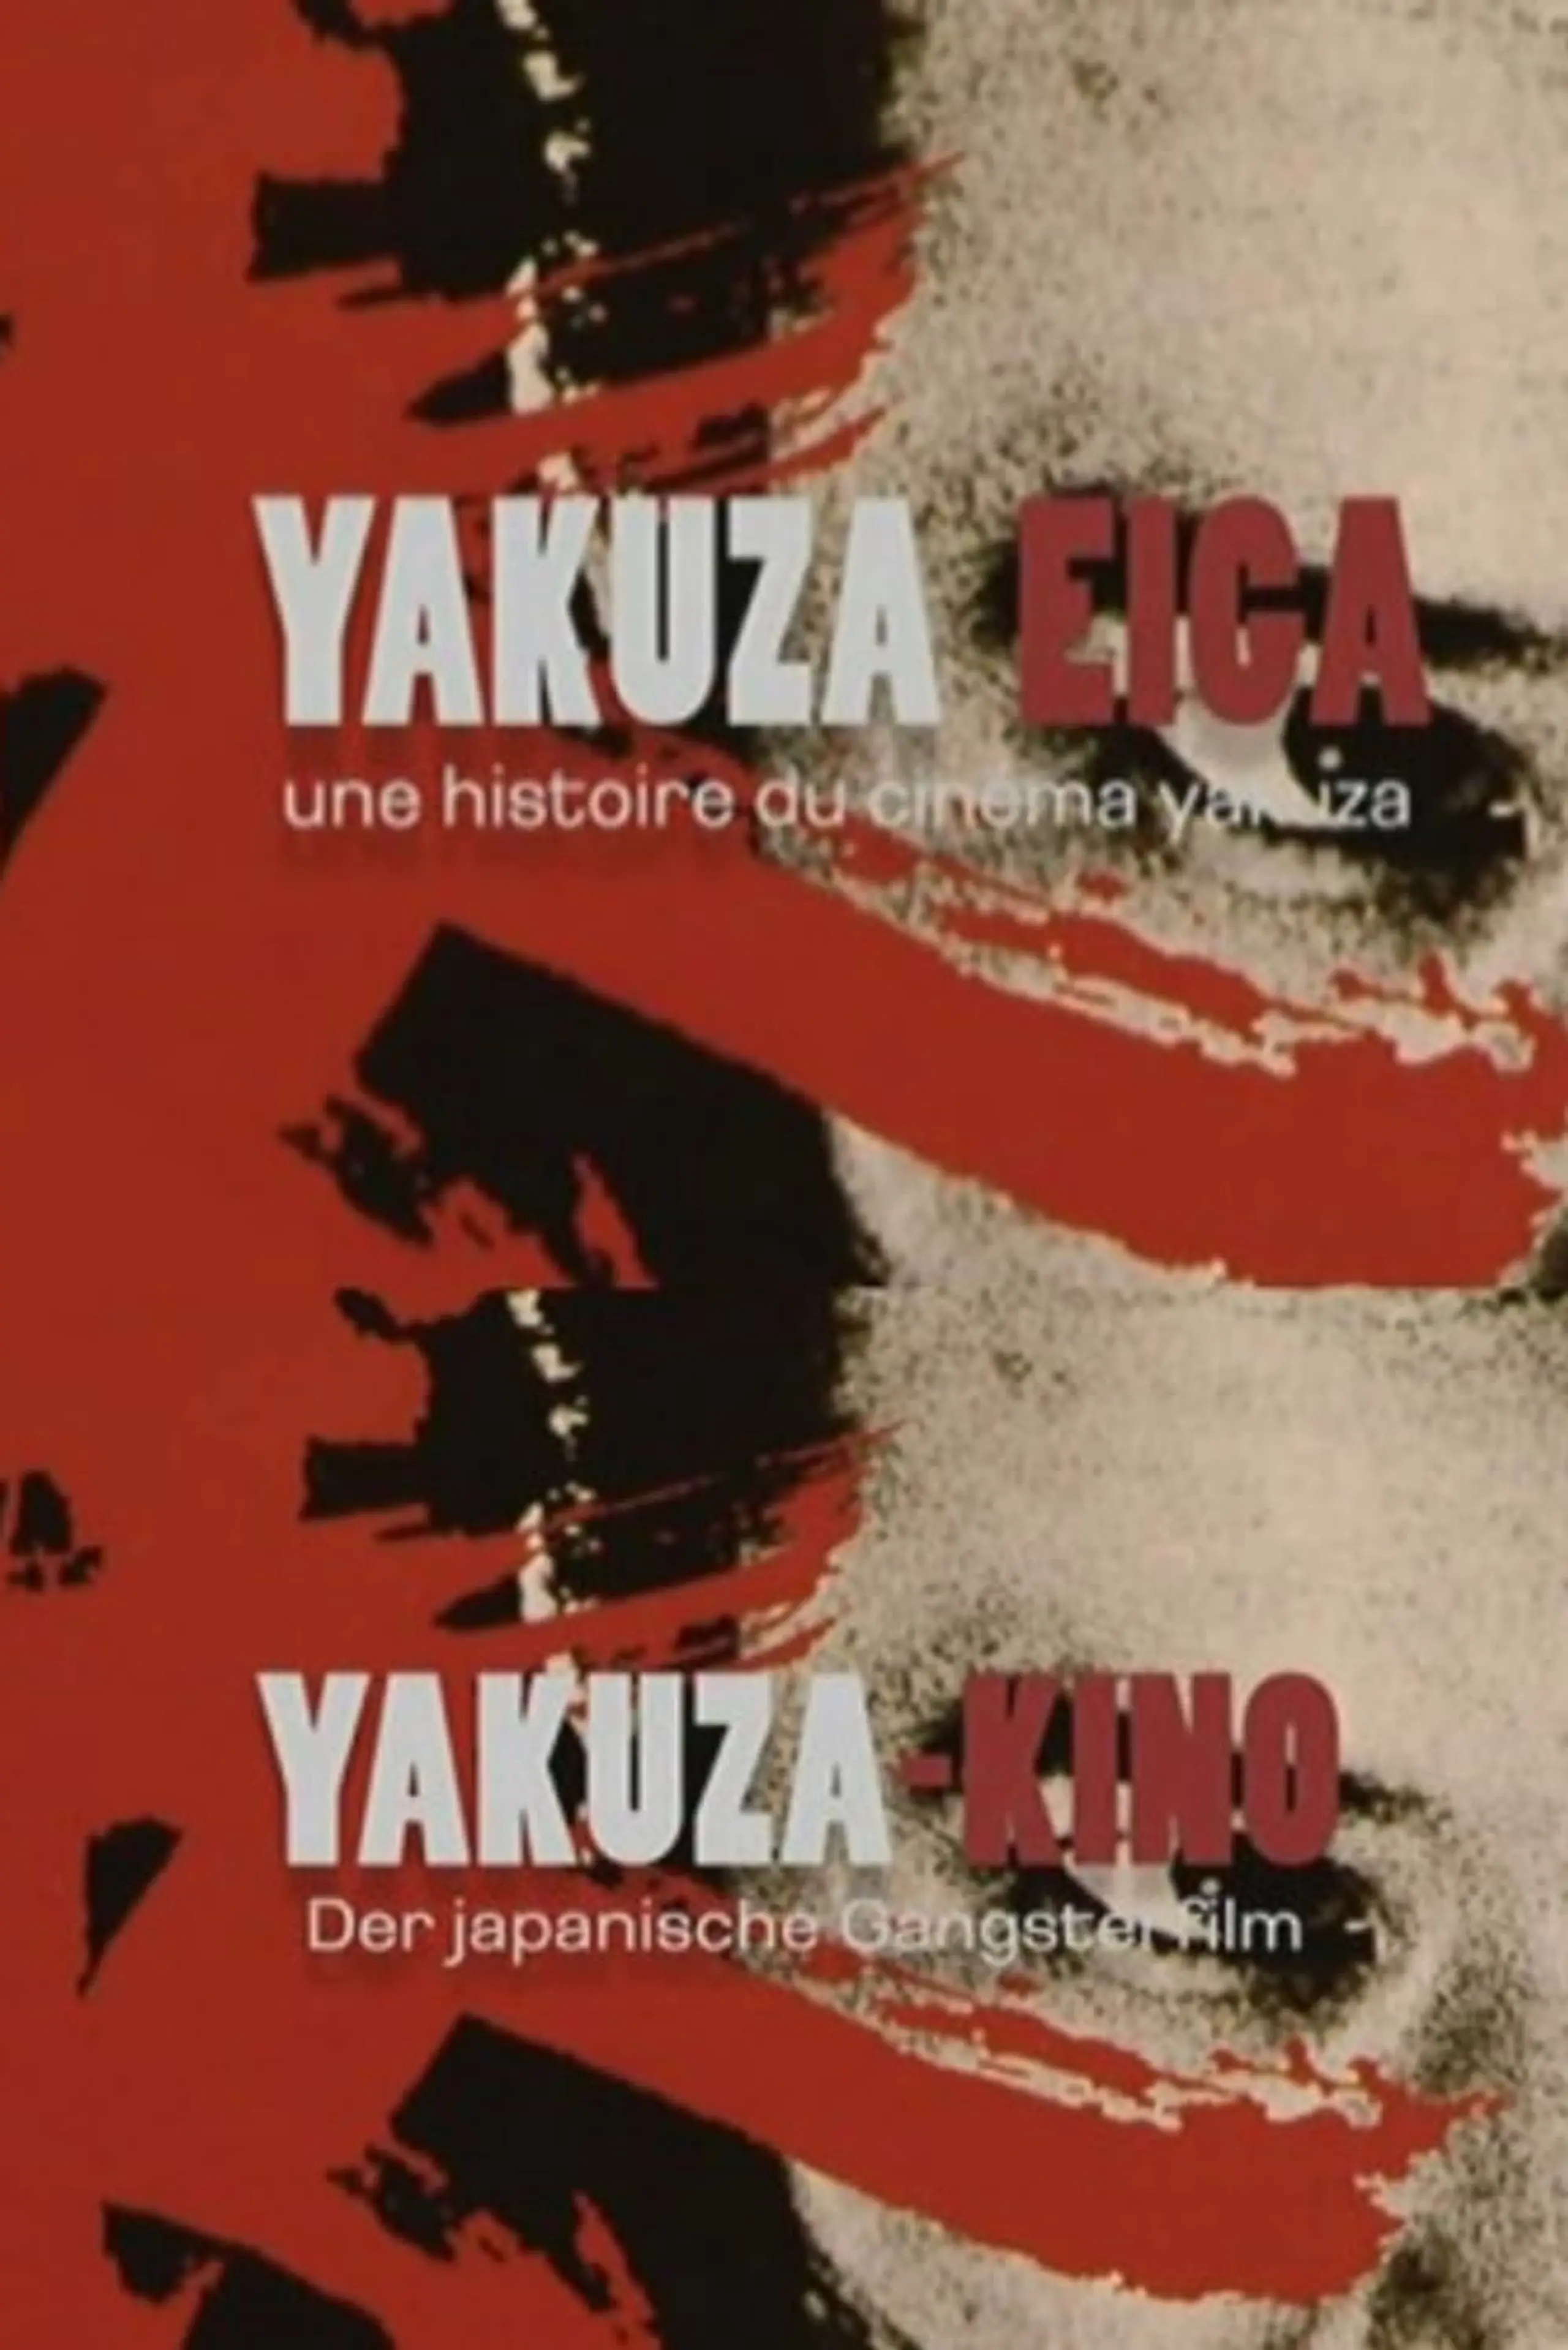 Yakuza-Kino - Der japanische Gangsterfilm